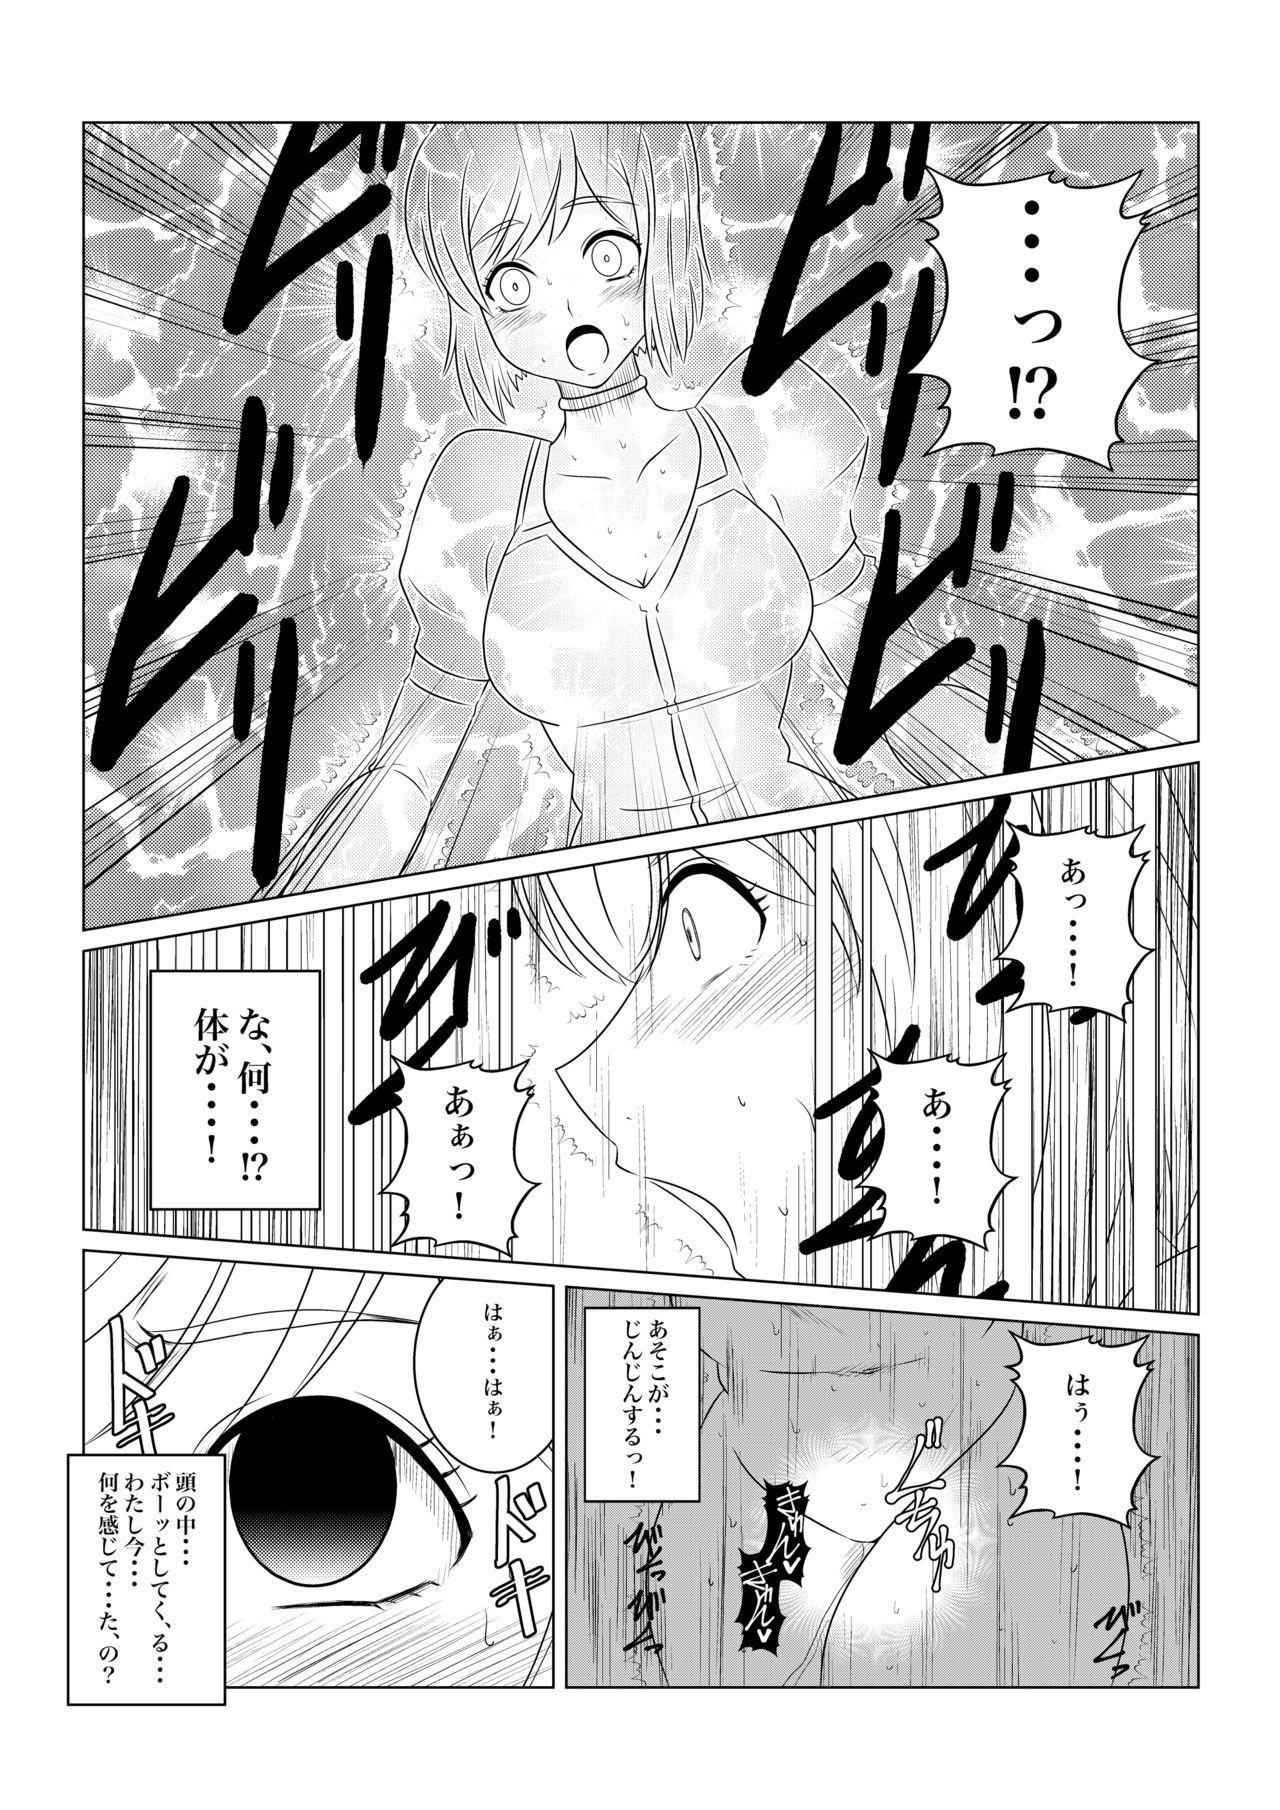 Futa Gekka Midarezaki - Tales of vesperia Moms - Page 8